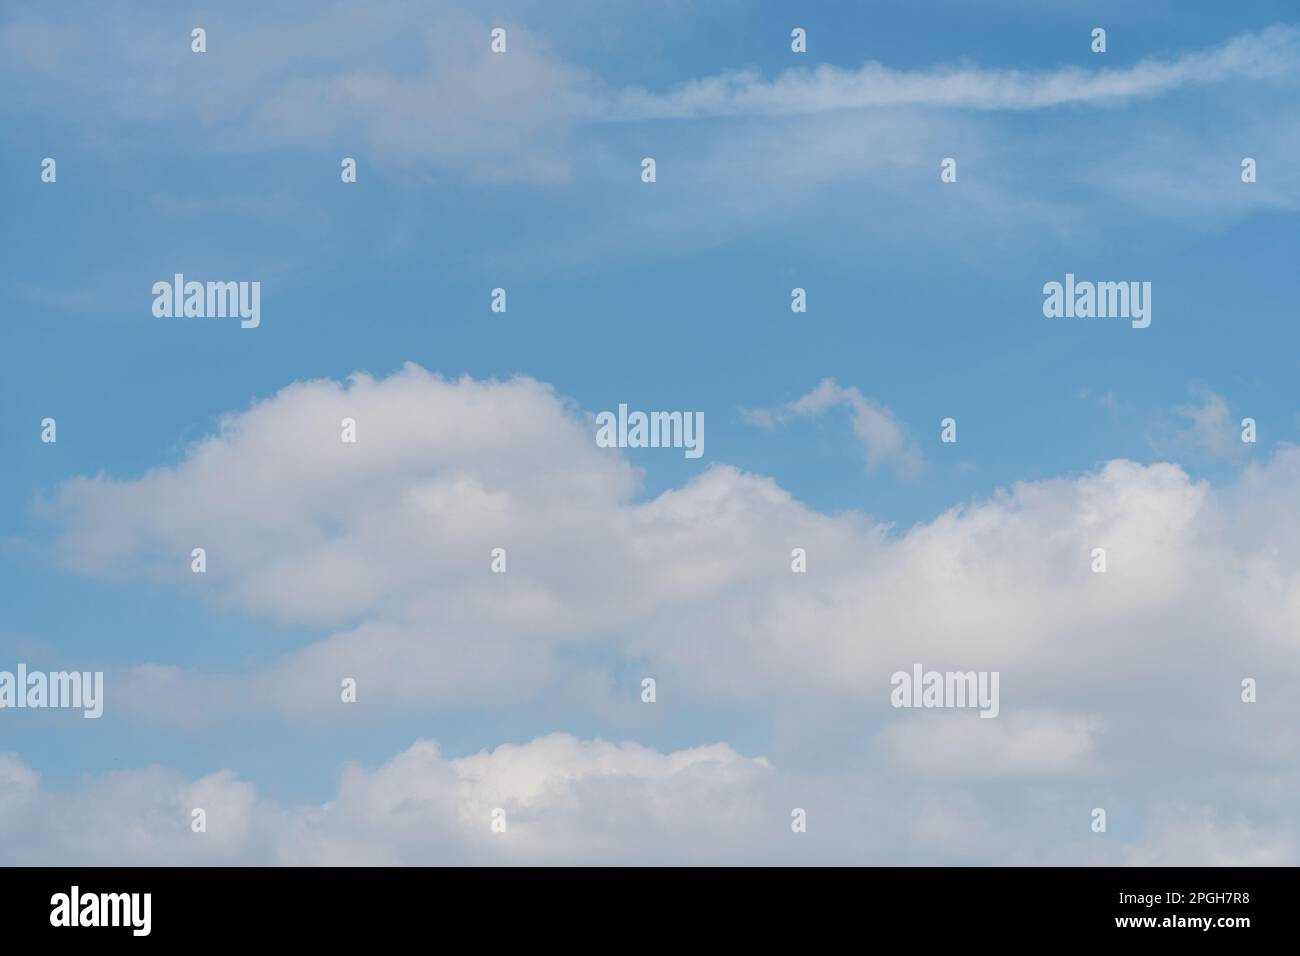 Wunderschöner blauer Himmel mit großen weißen, geschwollenen Wolken. Wolkenwelt und Himmelshintergrund Konzept. Stockfoto